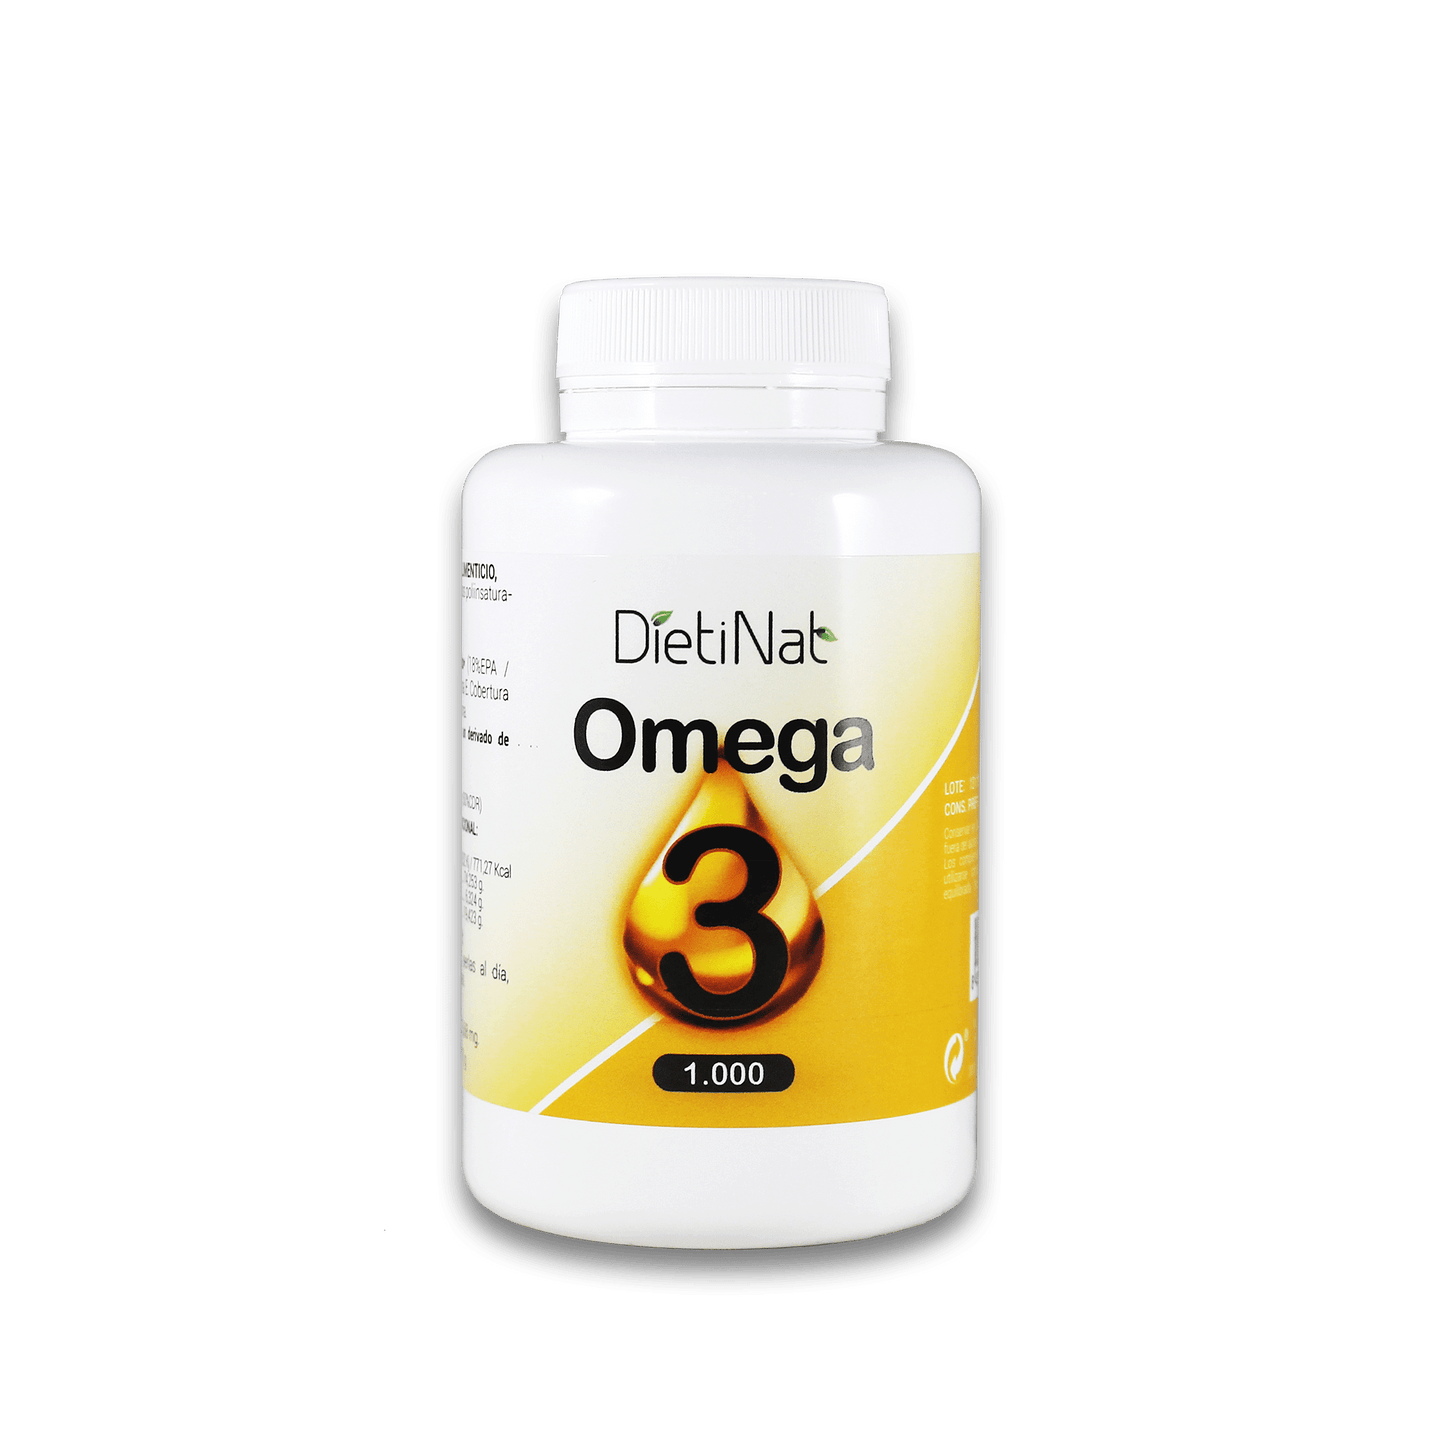 Omega 3 1000 mg